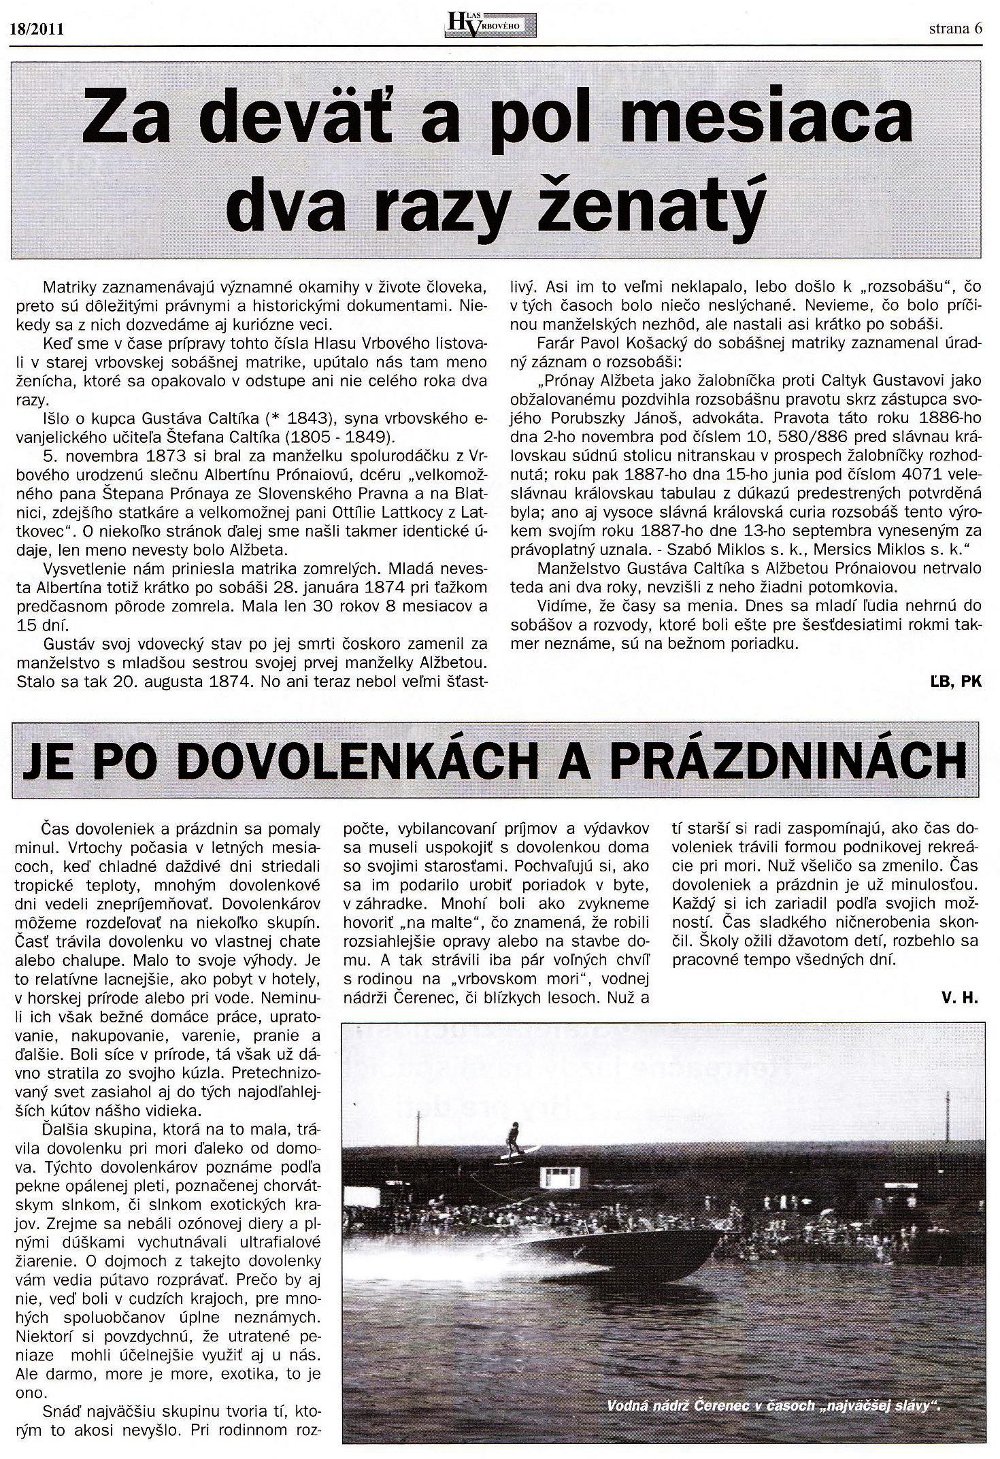 Hlas Vrbového 18/2011, strana 6